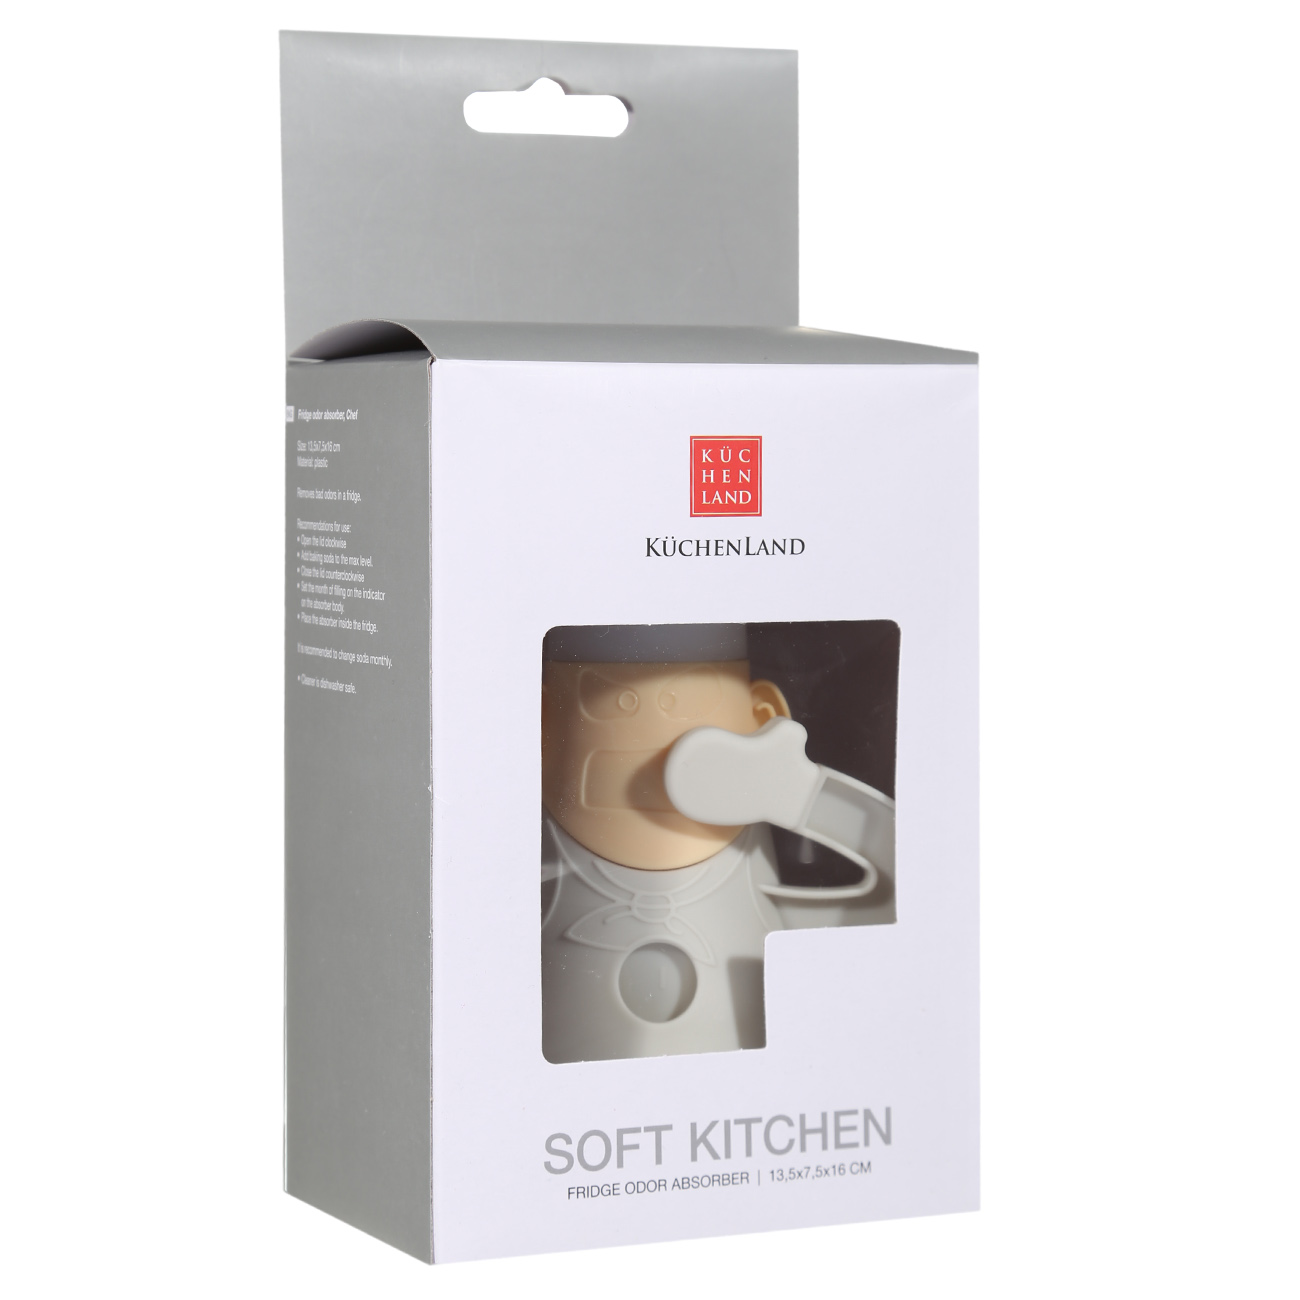 Odour absorber for refrigerator, 16 cm, plastic, Cook, Soft kitchen изображение № 3